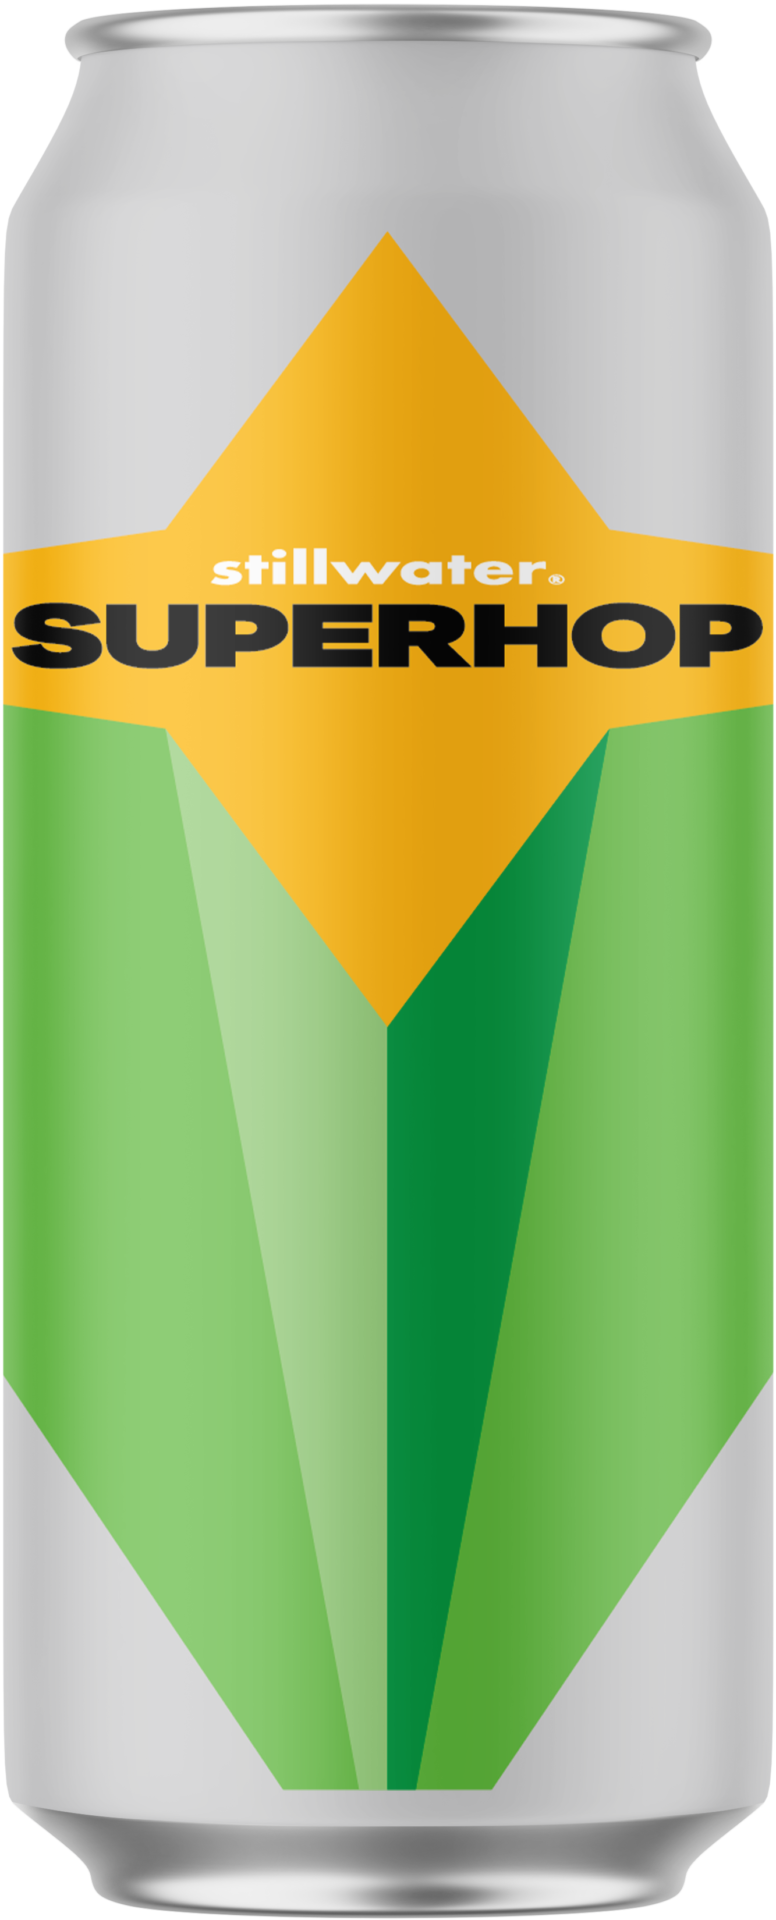 superhop